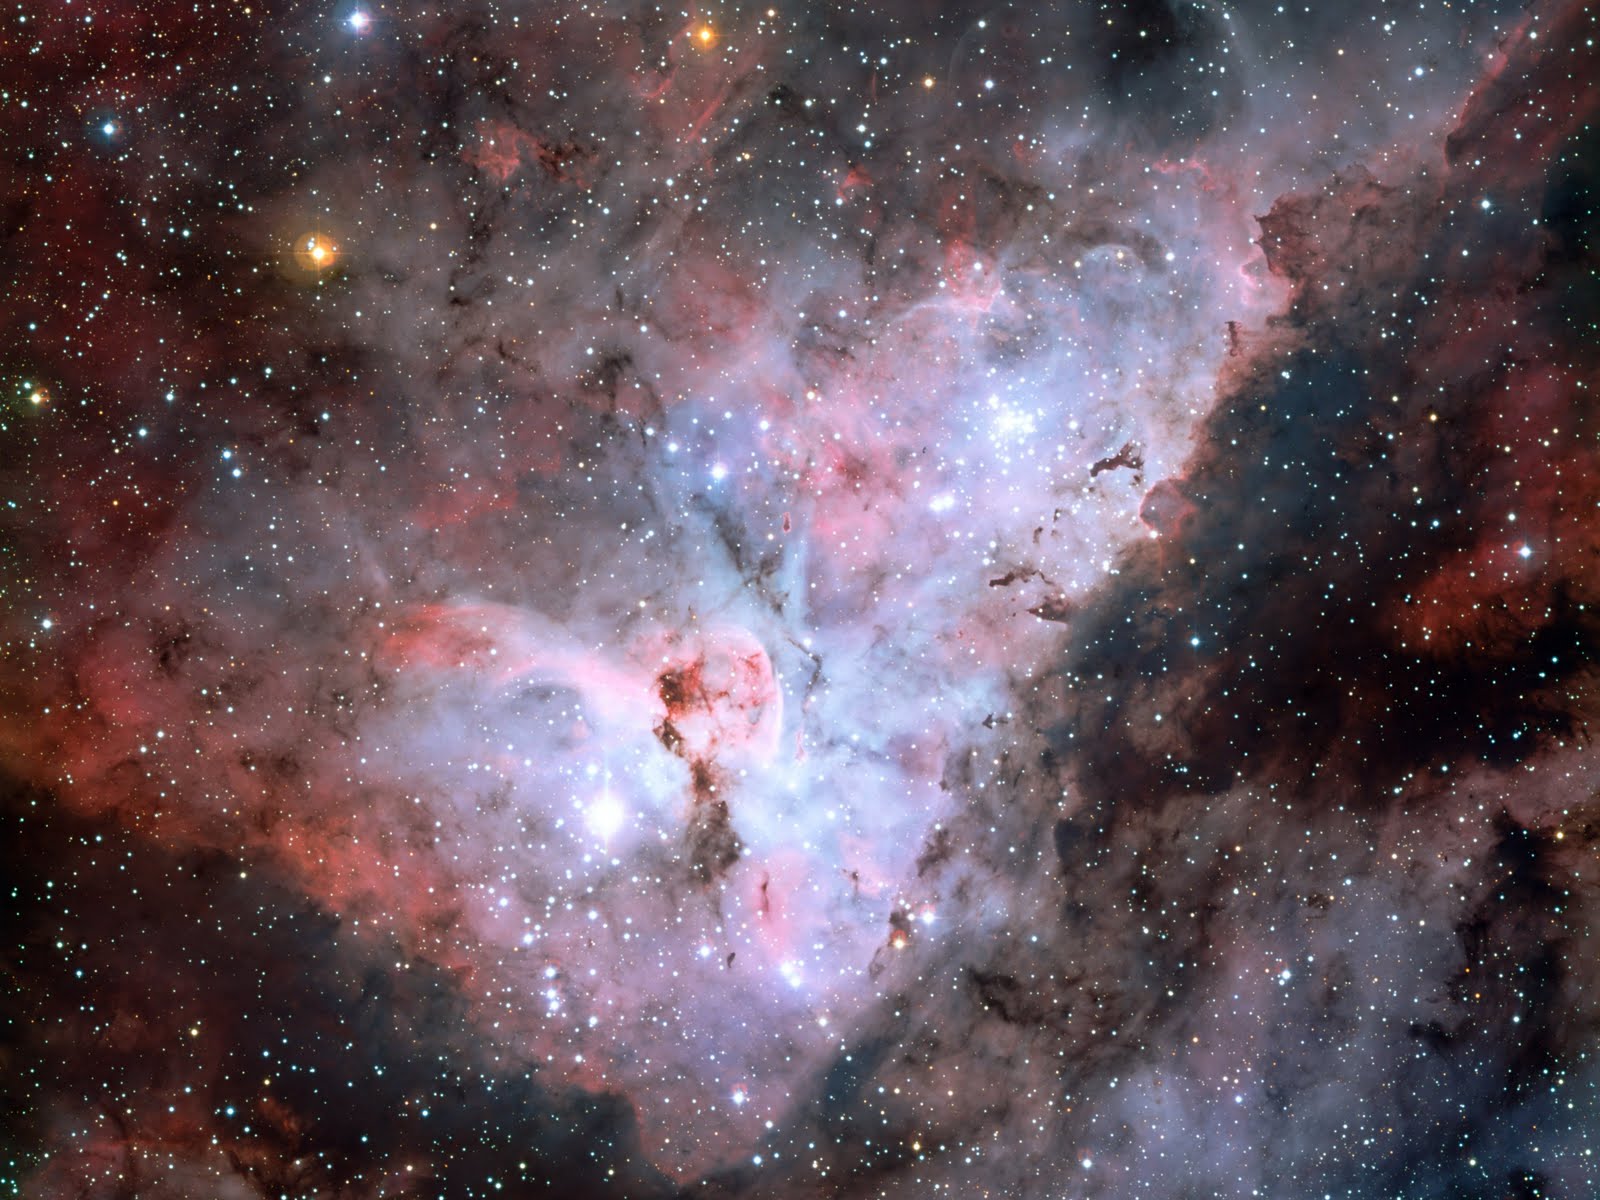 http://2.bp.blogspot.com/-Zfv8SIVKpIk/Tb0fiBwbDfI/AAAAAAAABHg/wNFMK3mdiCM/s1600/The-Great-Carina-Nebula.jpg